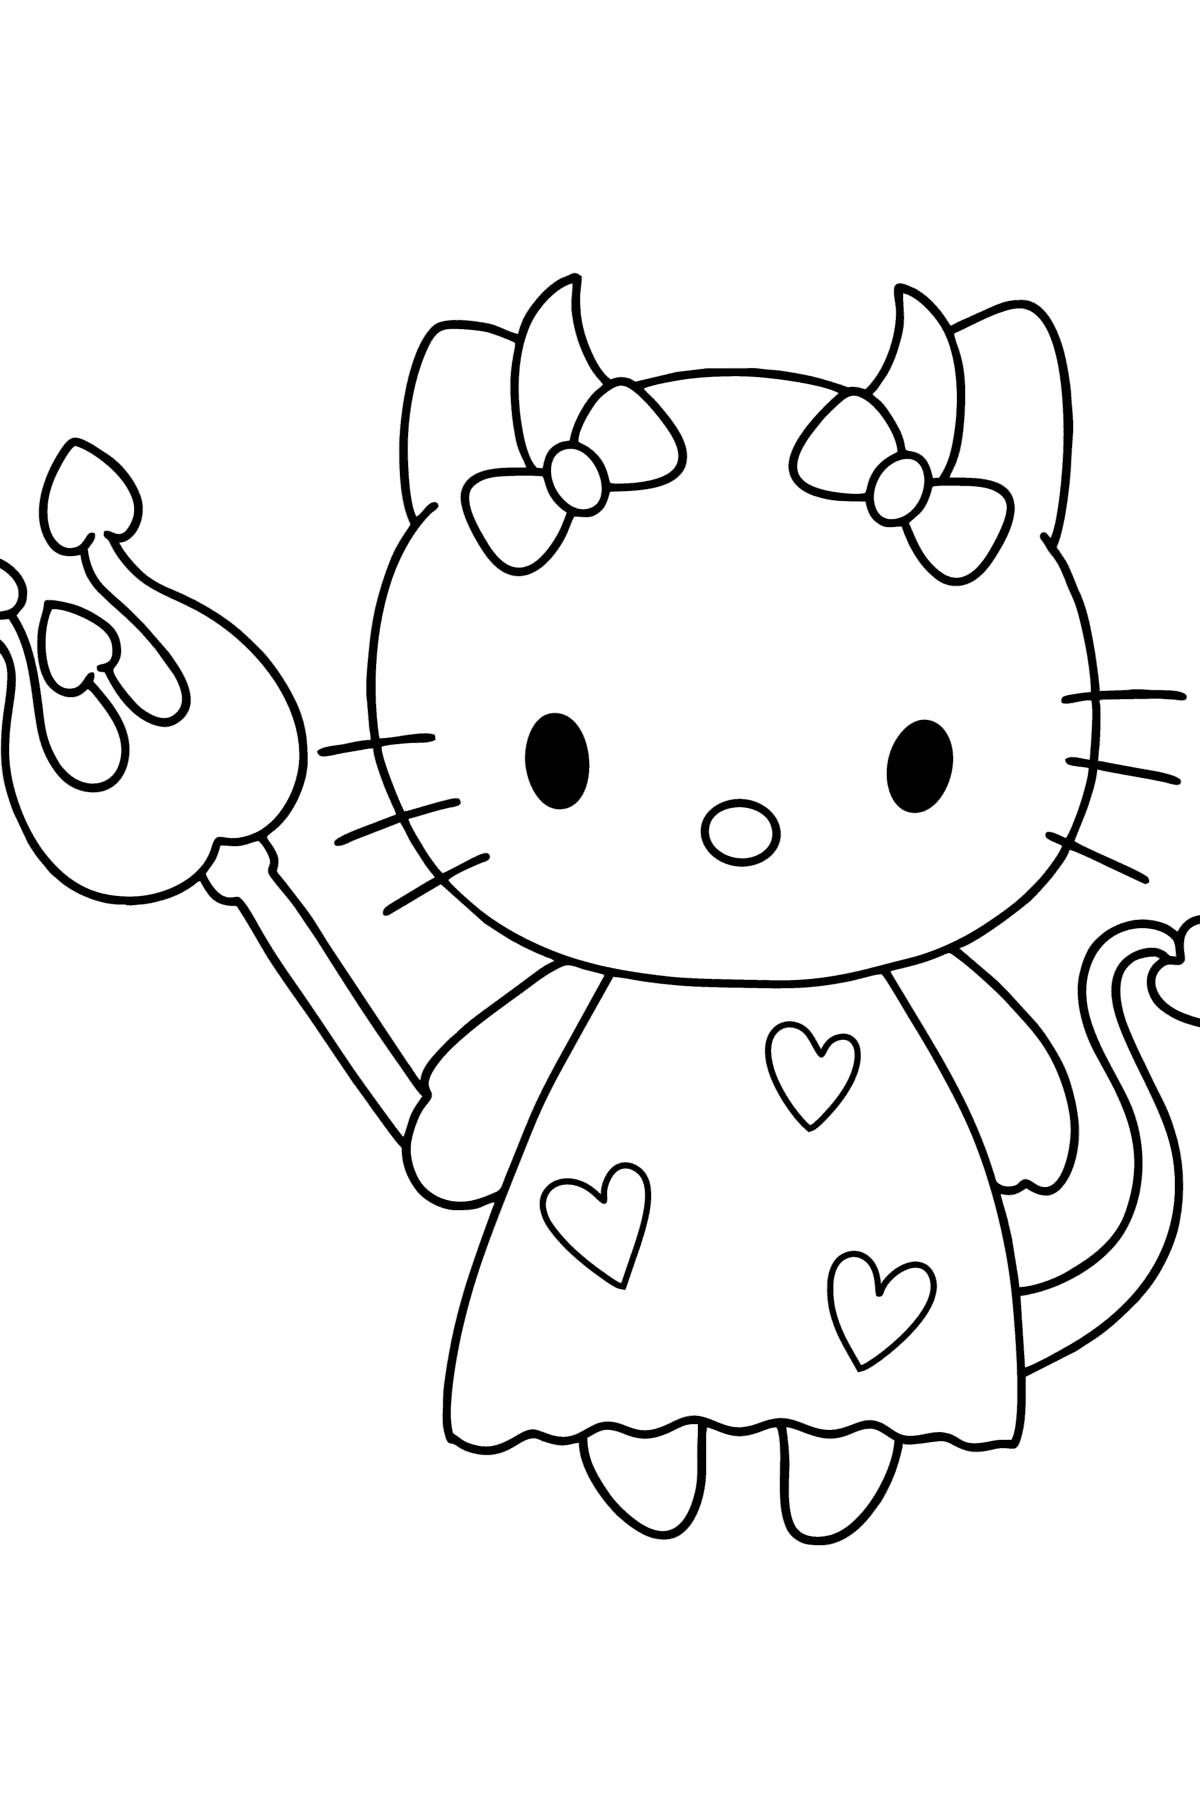 Coloriage de Hello Kitty Diable - Coloriages pour les Enfants